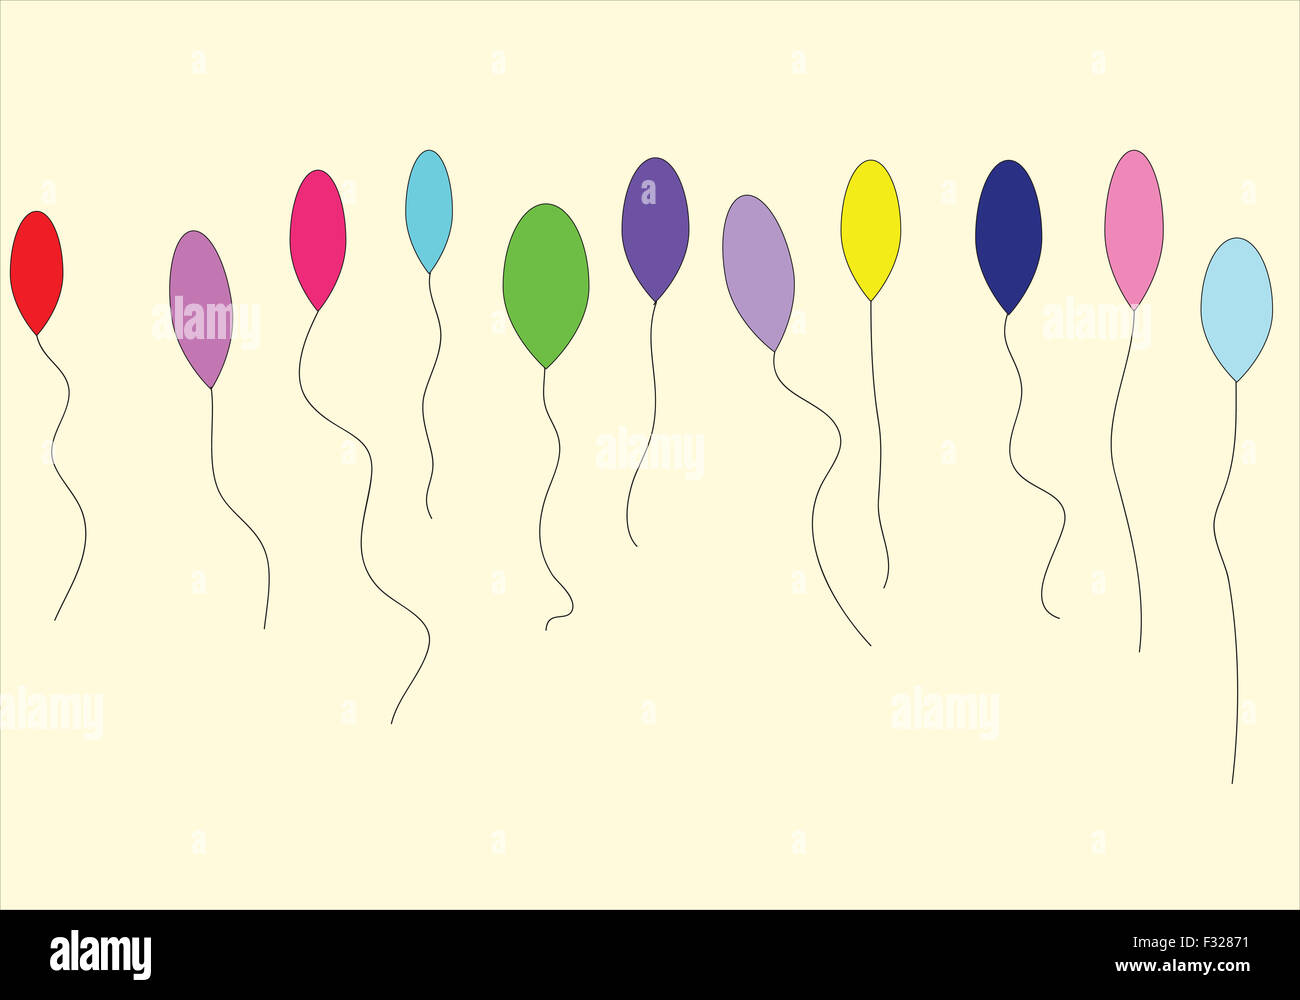 Undici palloncini colorati isolato su sfondo color crema Foto Stock